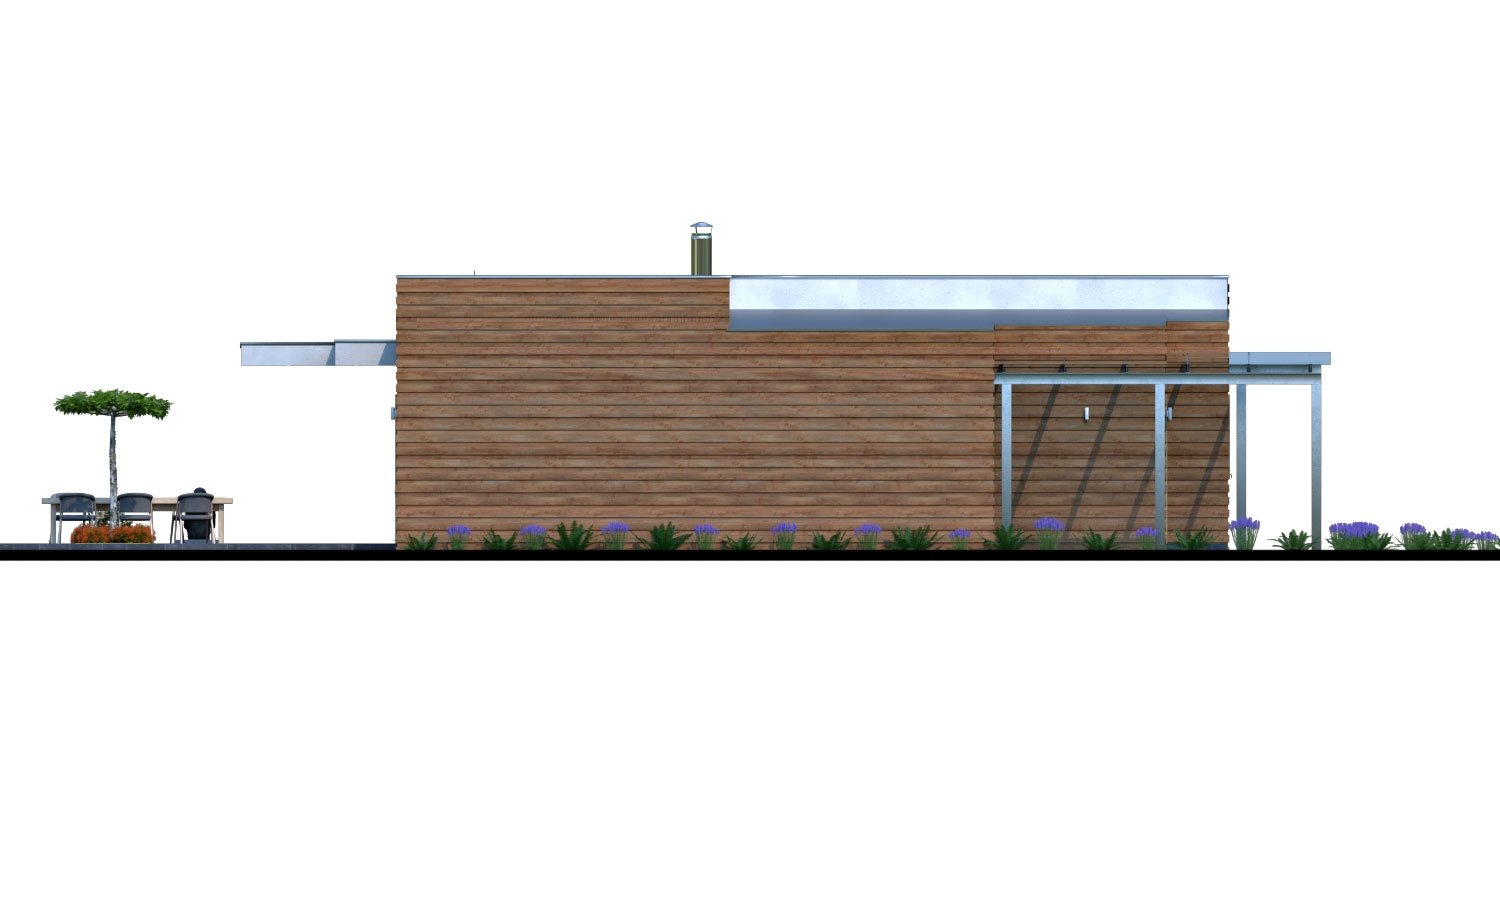 Zrkadlový pohľad 4. - Moderní rodinný dům s přístřeškem pro auto a plochou střechou.